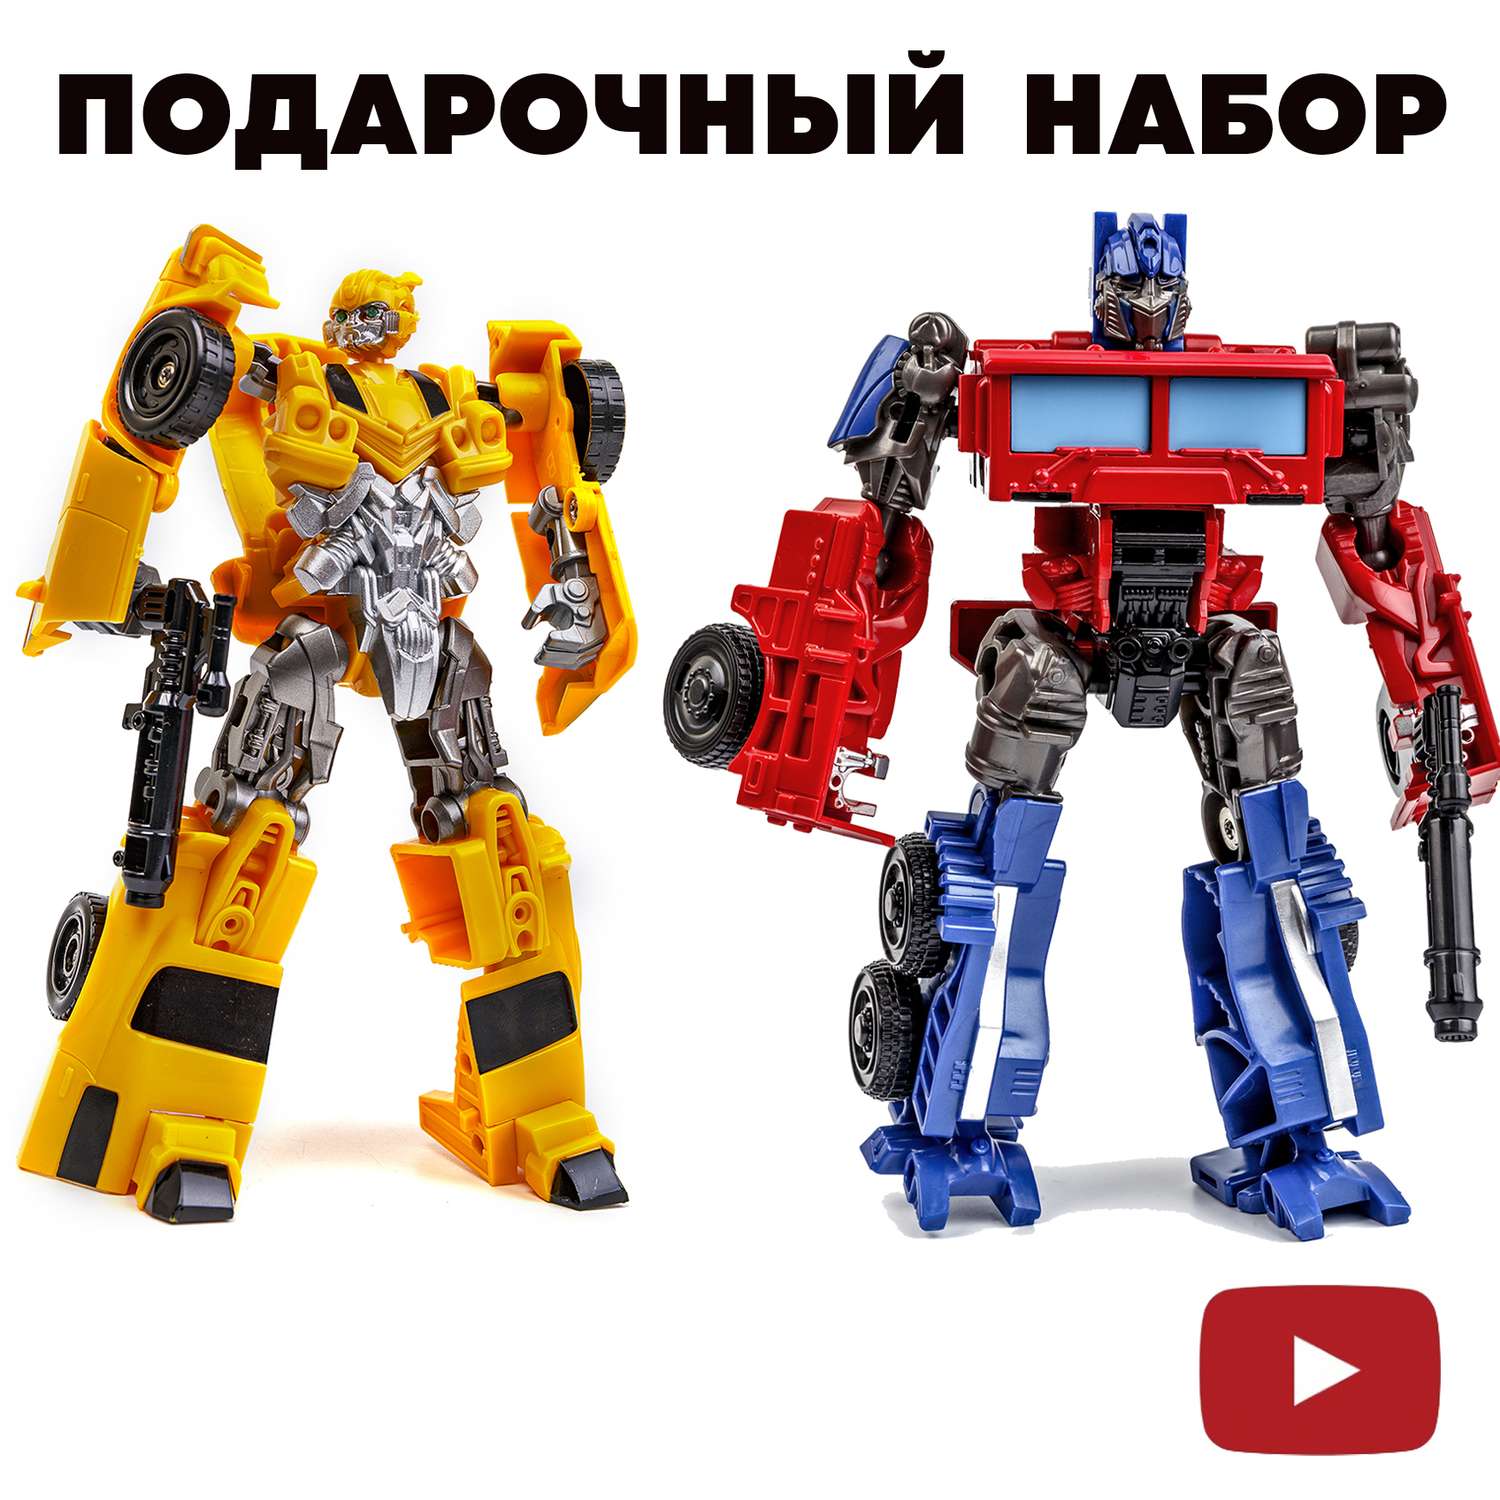 Игрушка трансформер Бамблби из мультфильма «Transformers» купить в Украине